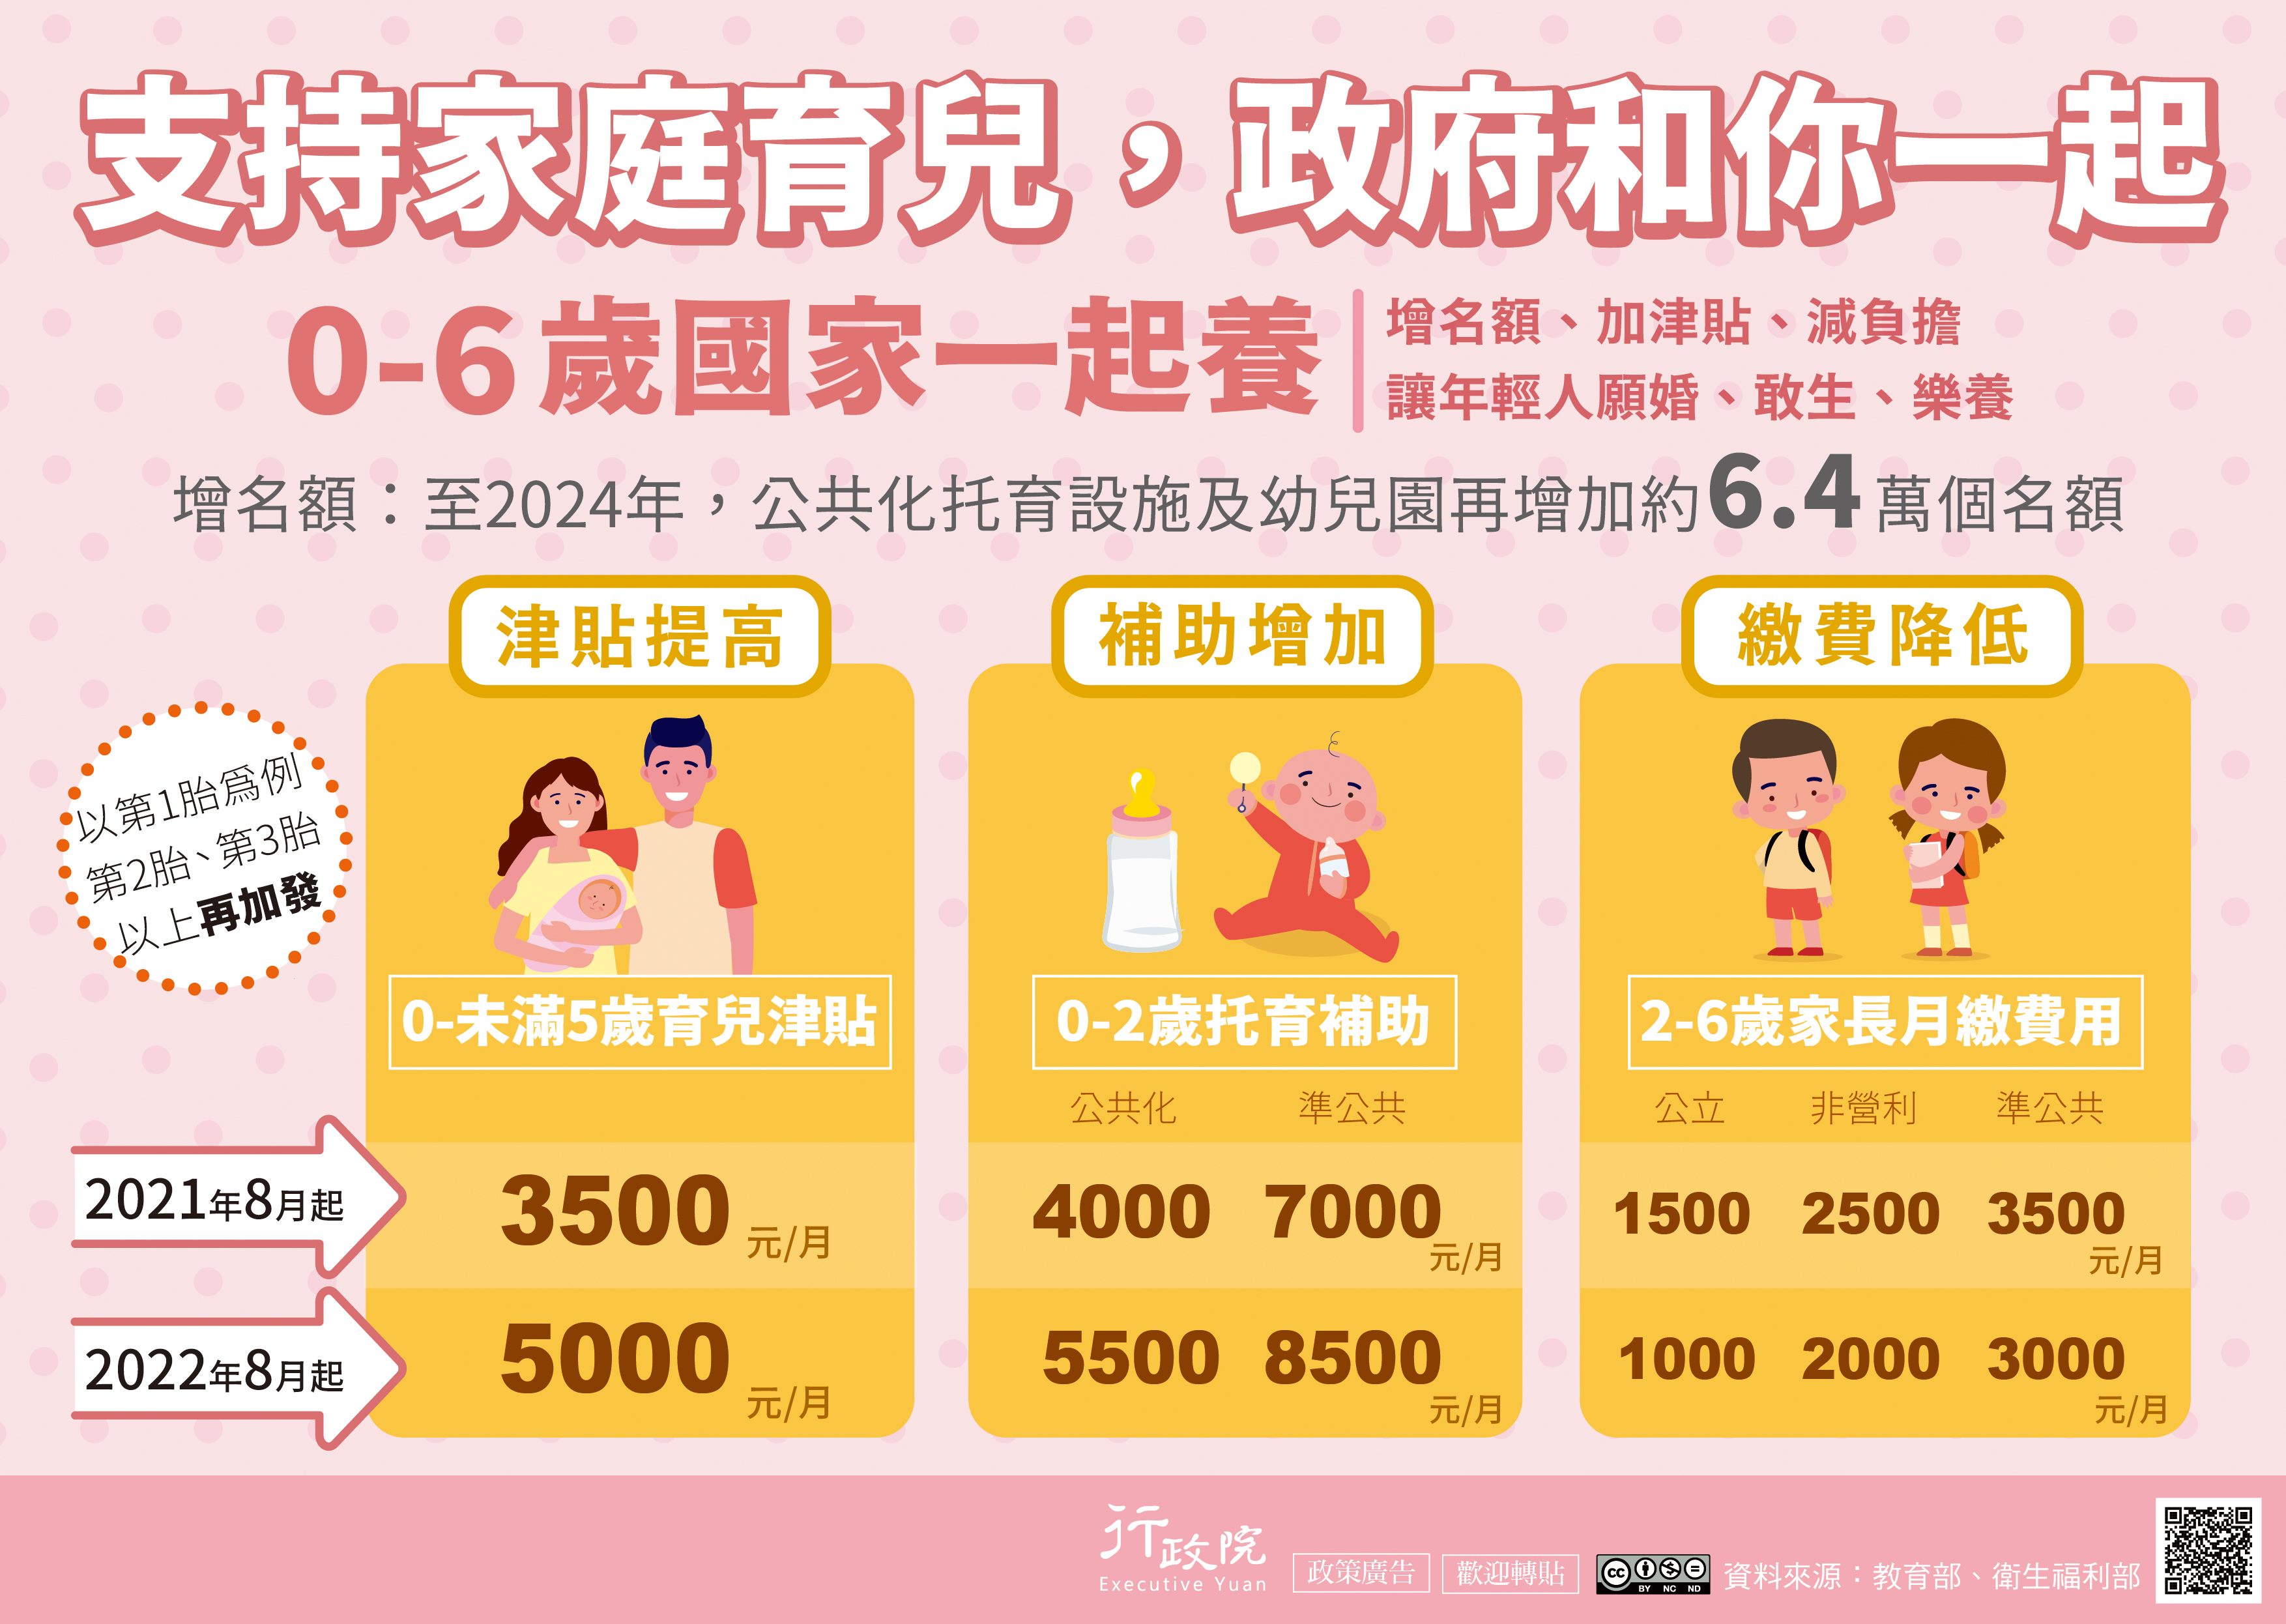 臺北市政府社會局 育兒津貼重要公告 自109年8月起 調整入帳日期為每月29日 另自110年8月起新制上路